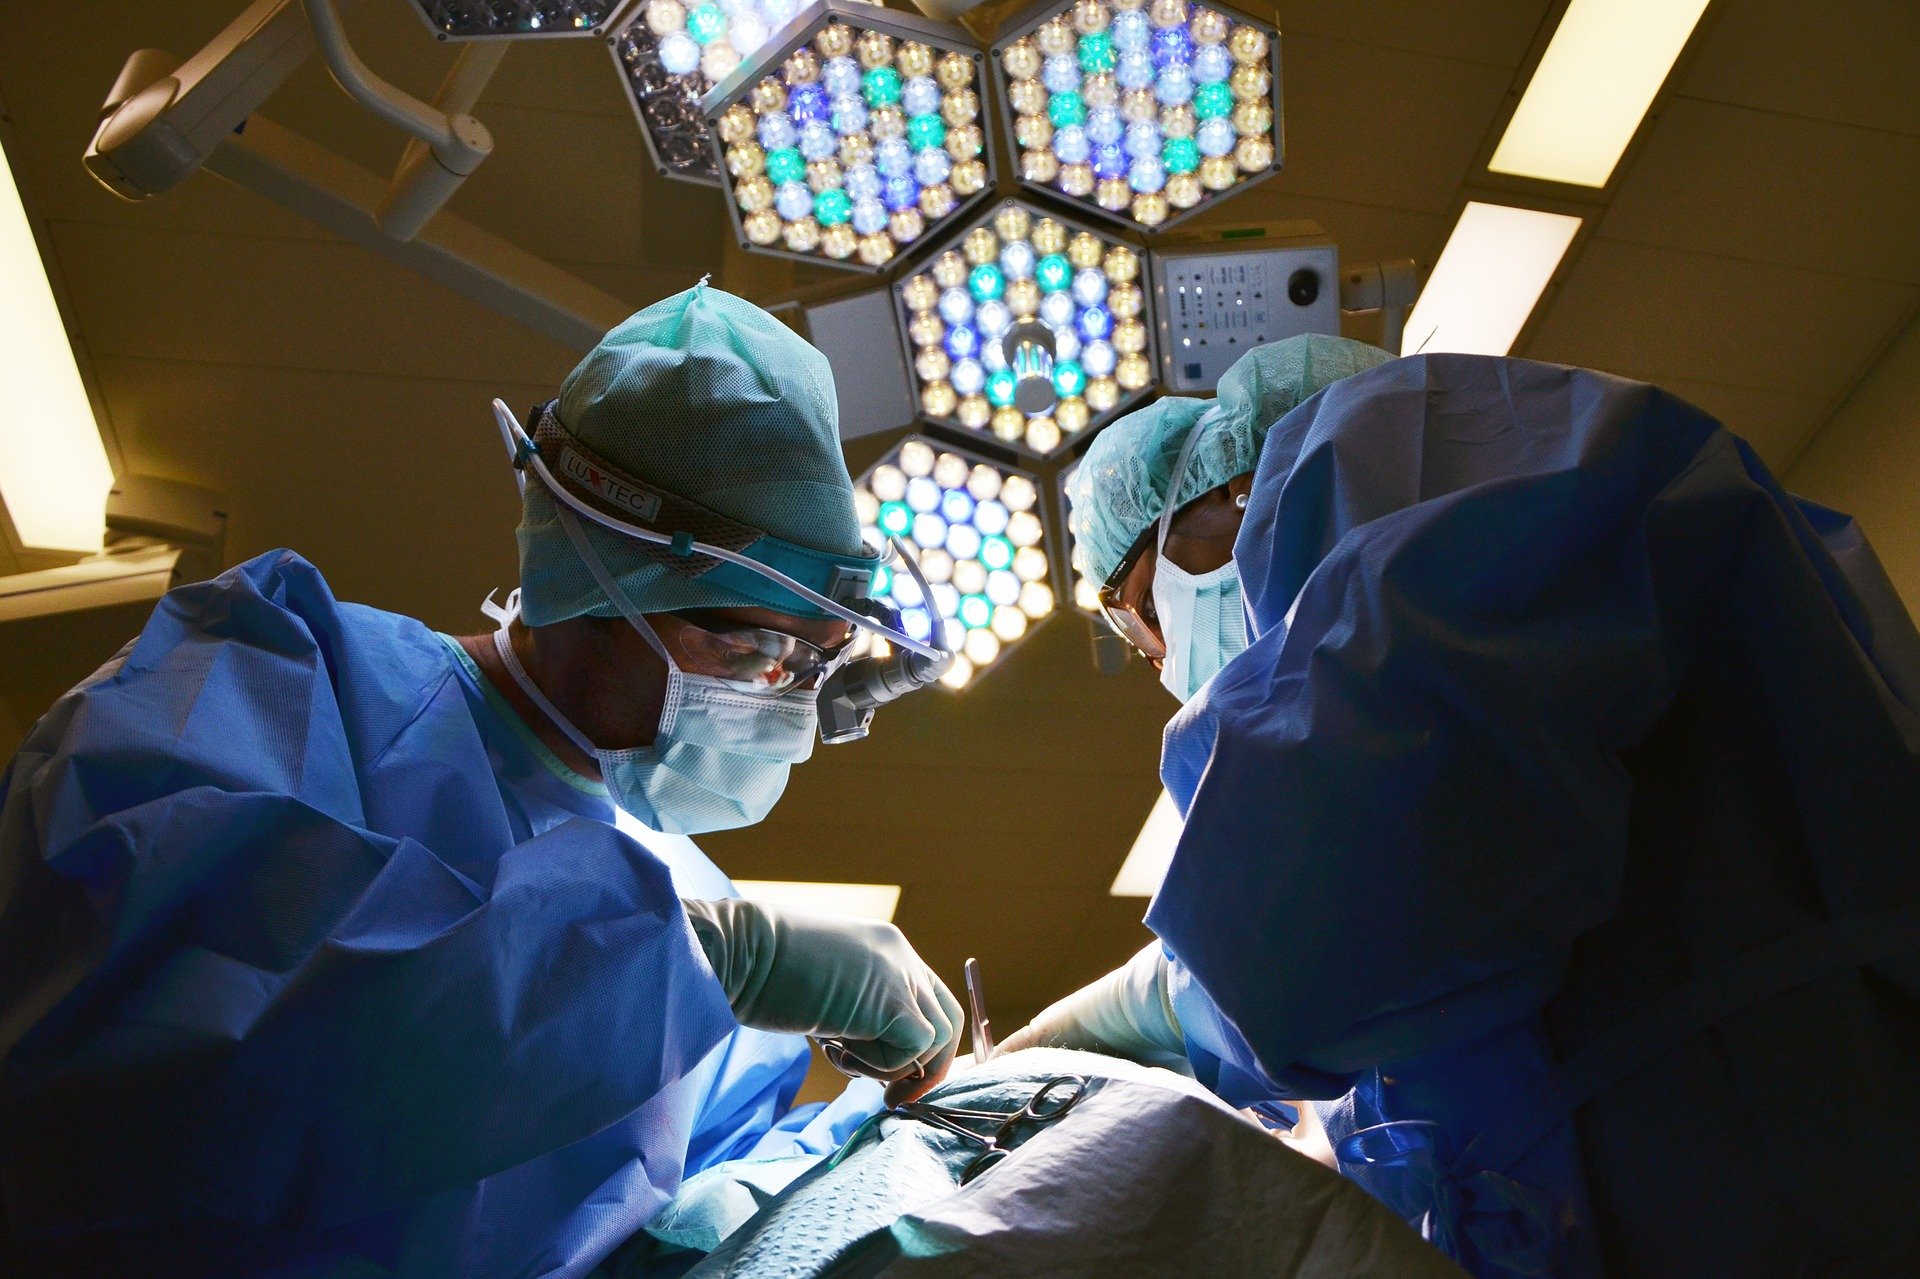 Jednorazowa odzież medyczna, a w tym fartuchy, maseczki oraz czepki chirurgiczne, to niezbędne indywidualne środki ochrony na sali operacyjnej (Źródło: pixabay.com, Autor: marionbrun)